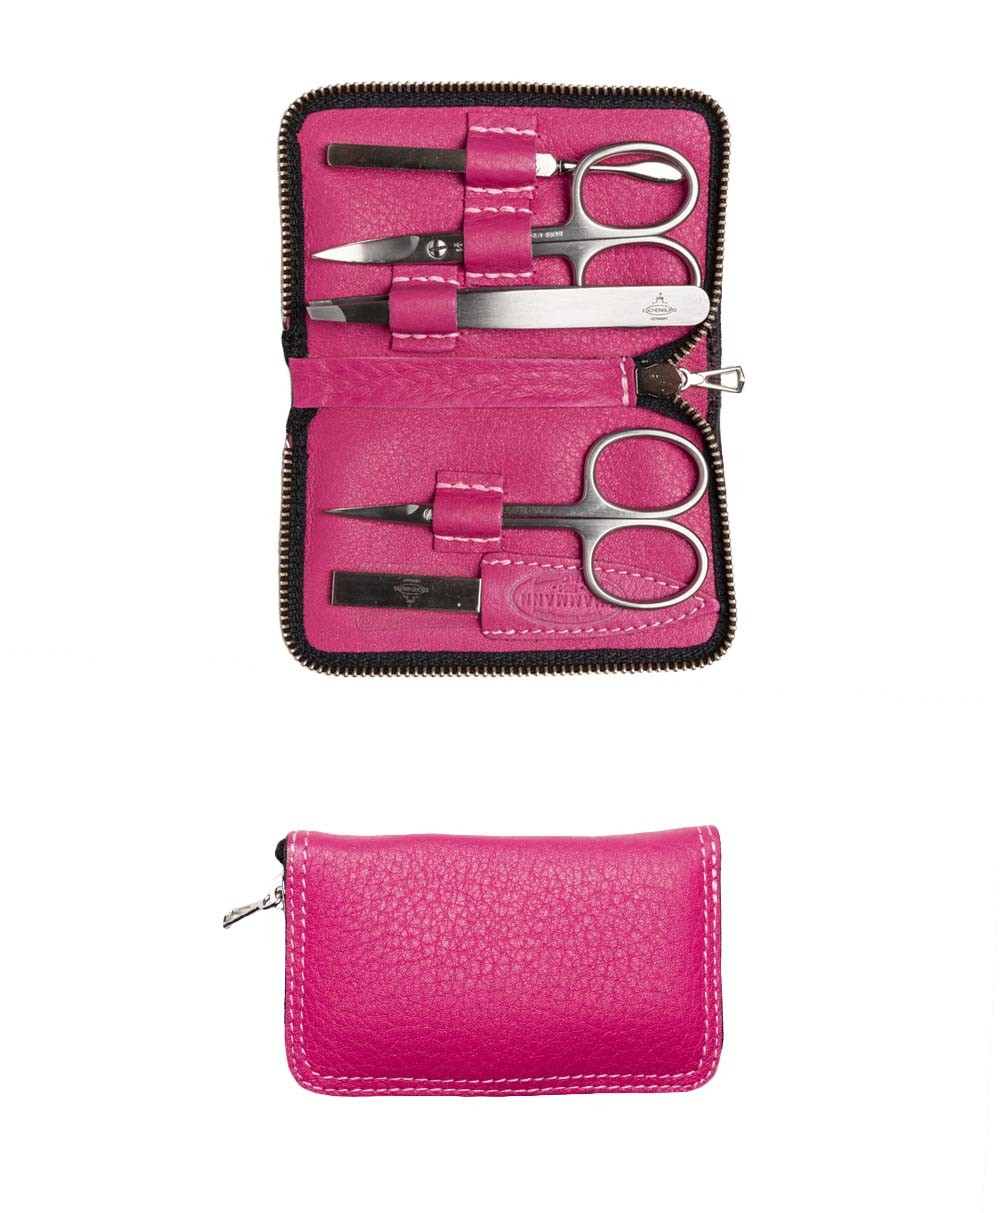 Das Produktbild zeigt das Chervo Manicure ZIP S – Maniküre-Etui Chervo Kalbleder in der Farbe pink – im Onlineshop RAUM concept store